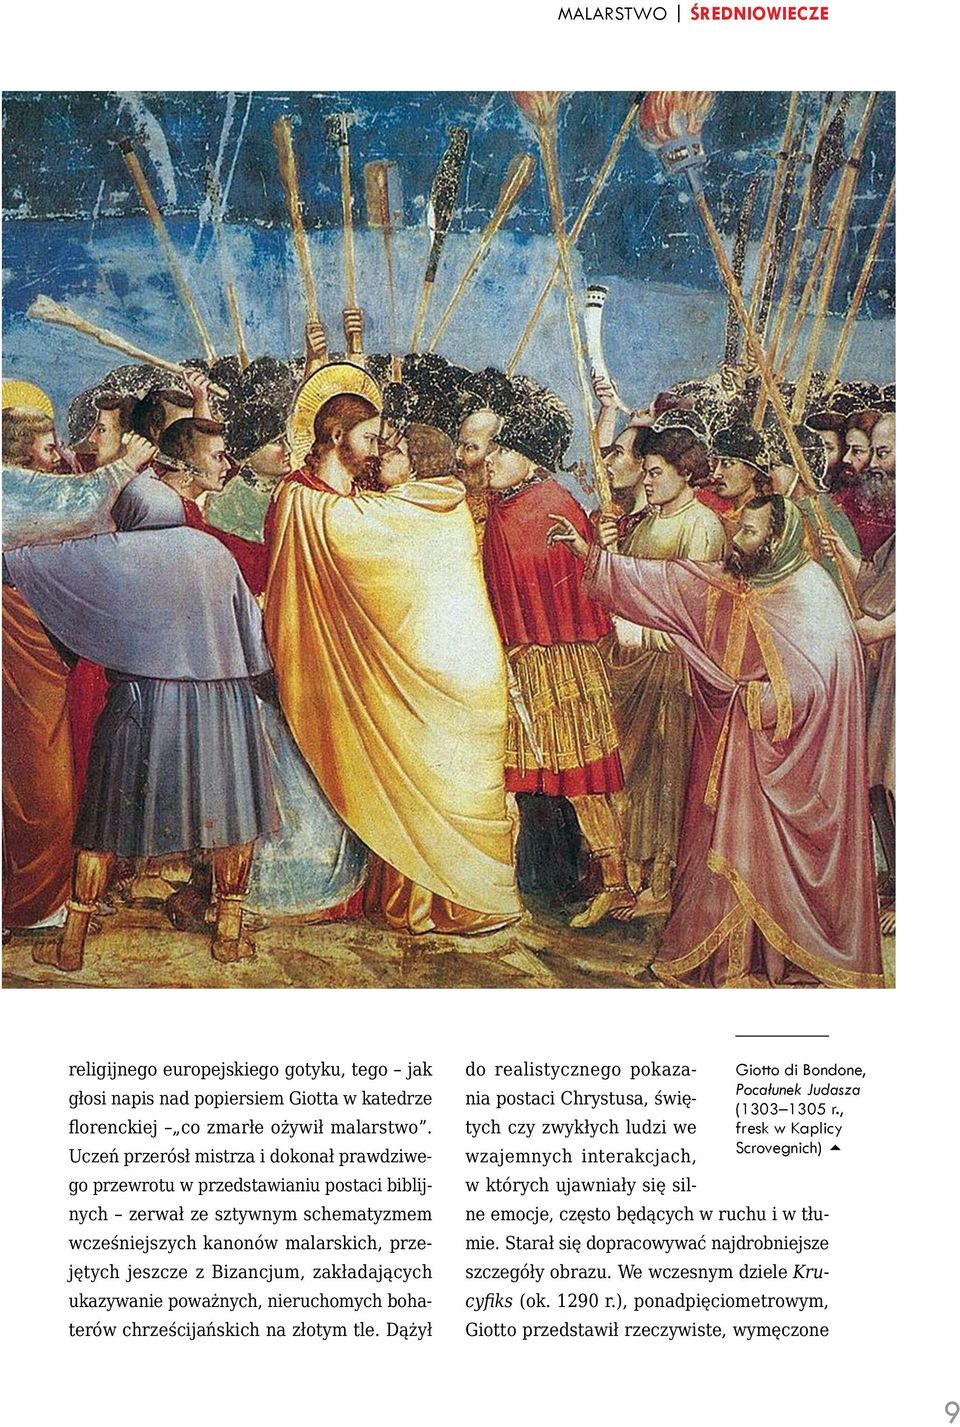 zakładających ukazywanie poważnych, nieruchomych bohaterów chrześcijańskich na złotym tle. Dążył do realistycznego pokazania postaci Chrystusa, świę- Giotto di Bondone, Pocałunek Judasza (1303 1305 r.